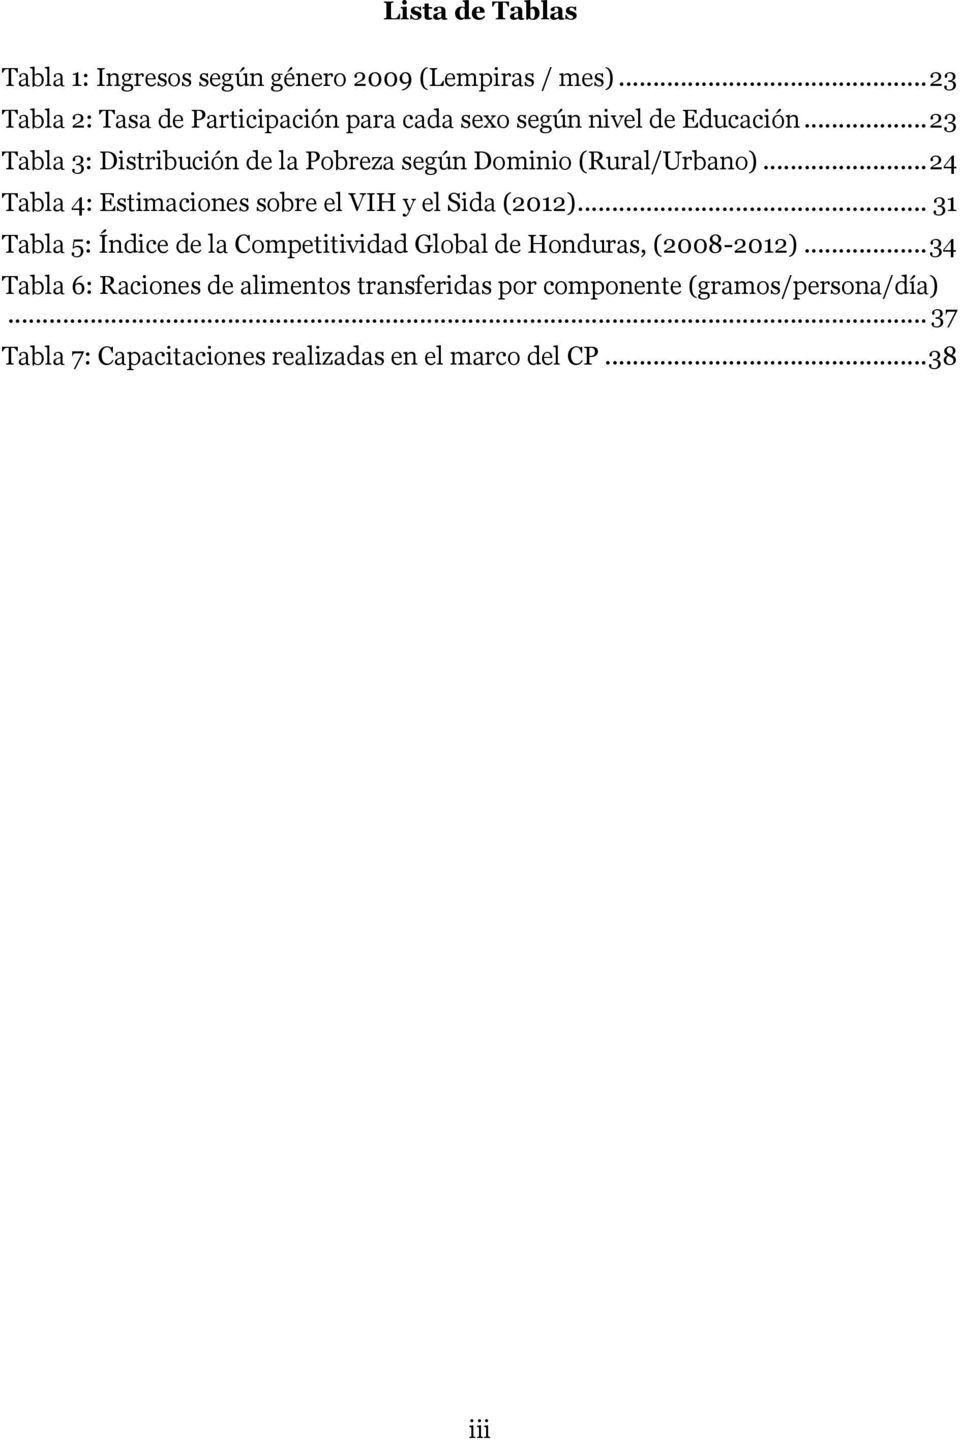 .. 23 Tabla 3: Distribución de la Pobreza según Dominio (Rural/Urbano)... 24 Tabla 4: Estimaciones sobre el VIH y el Sida (2012).